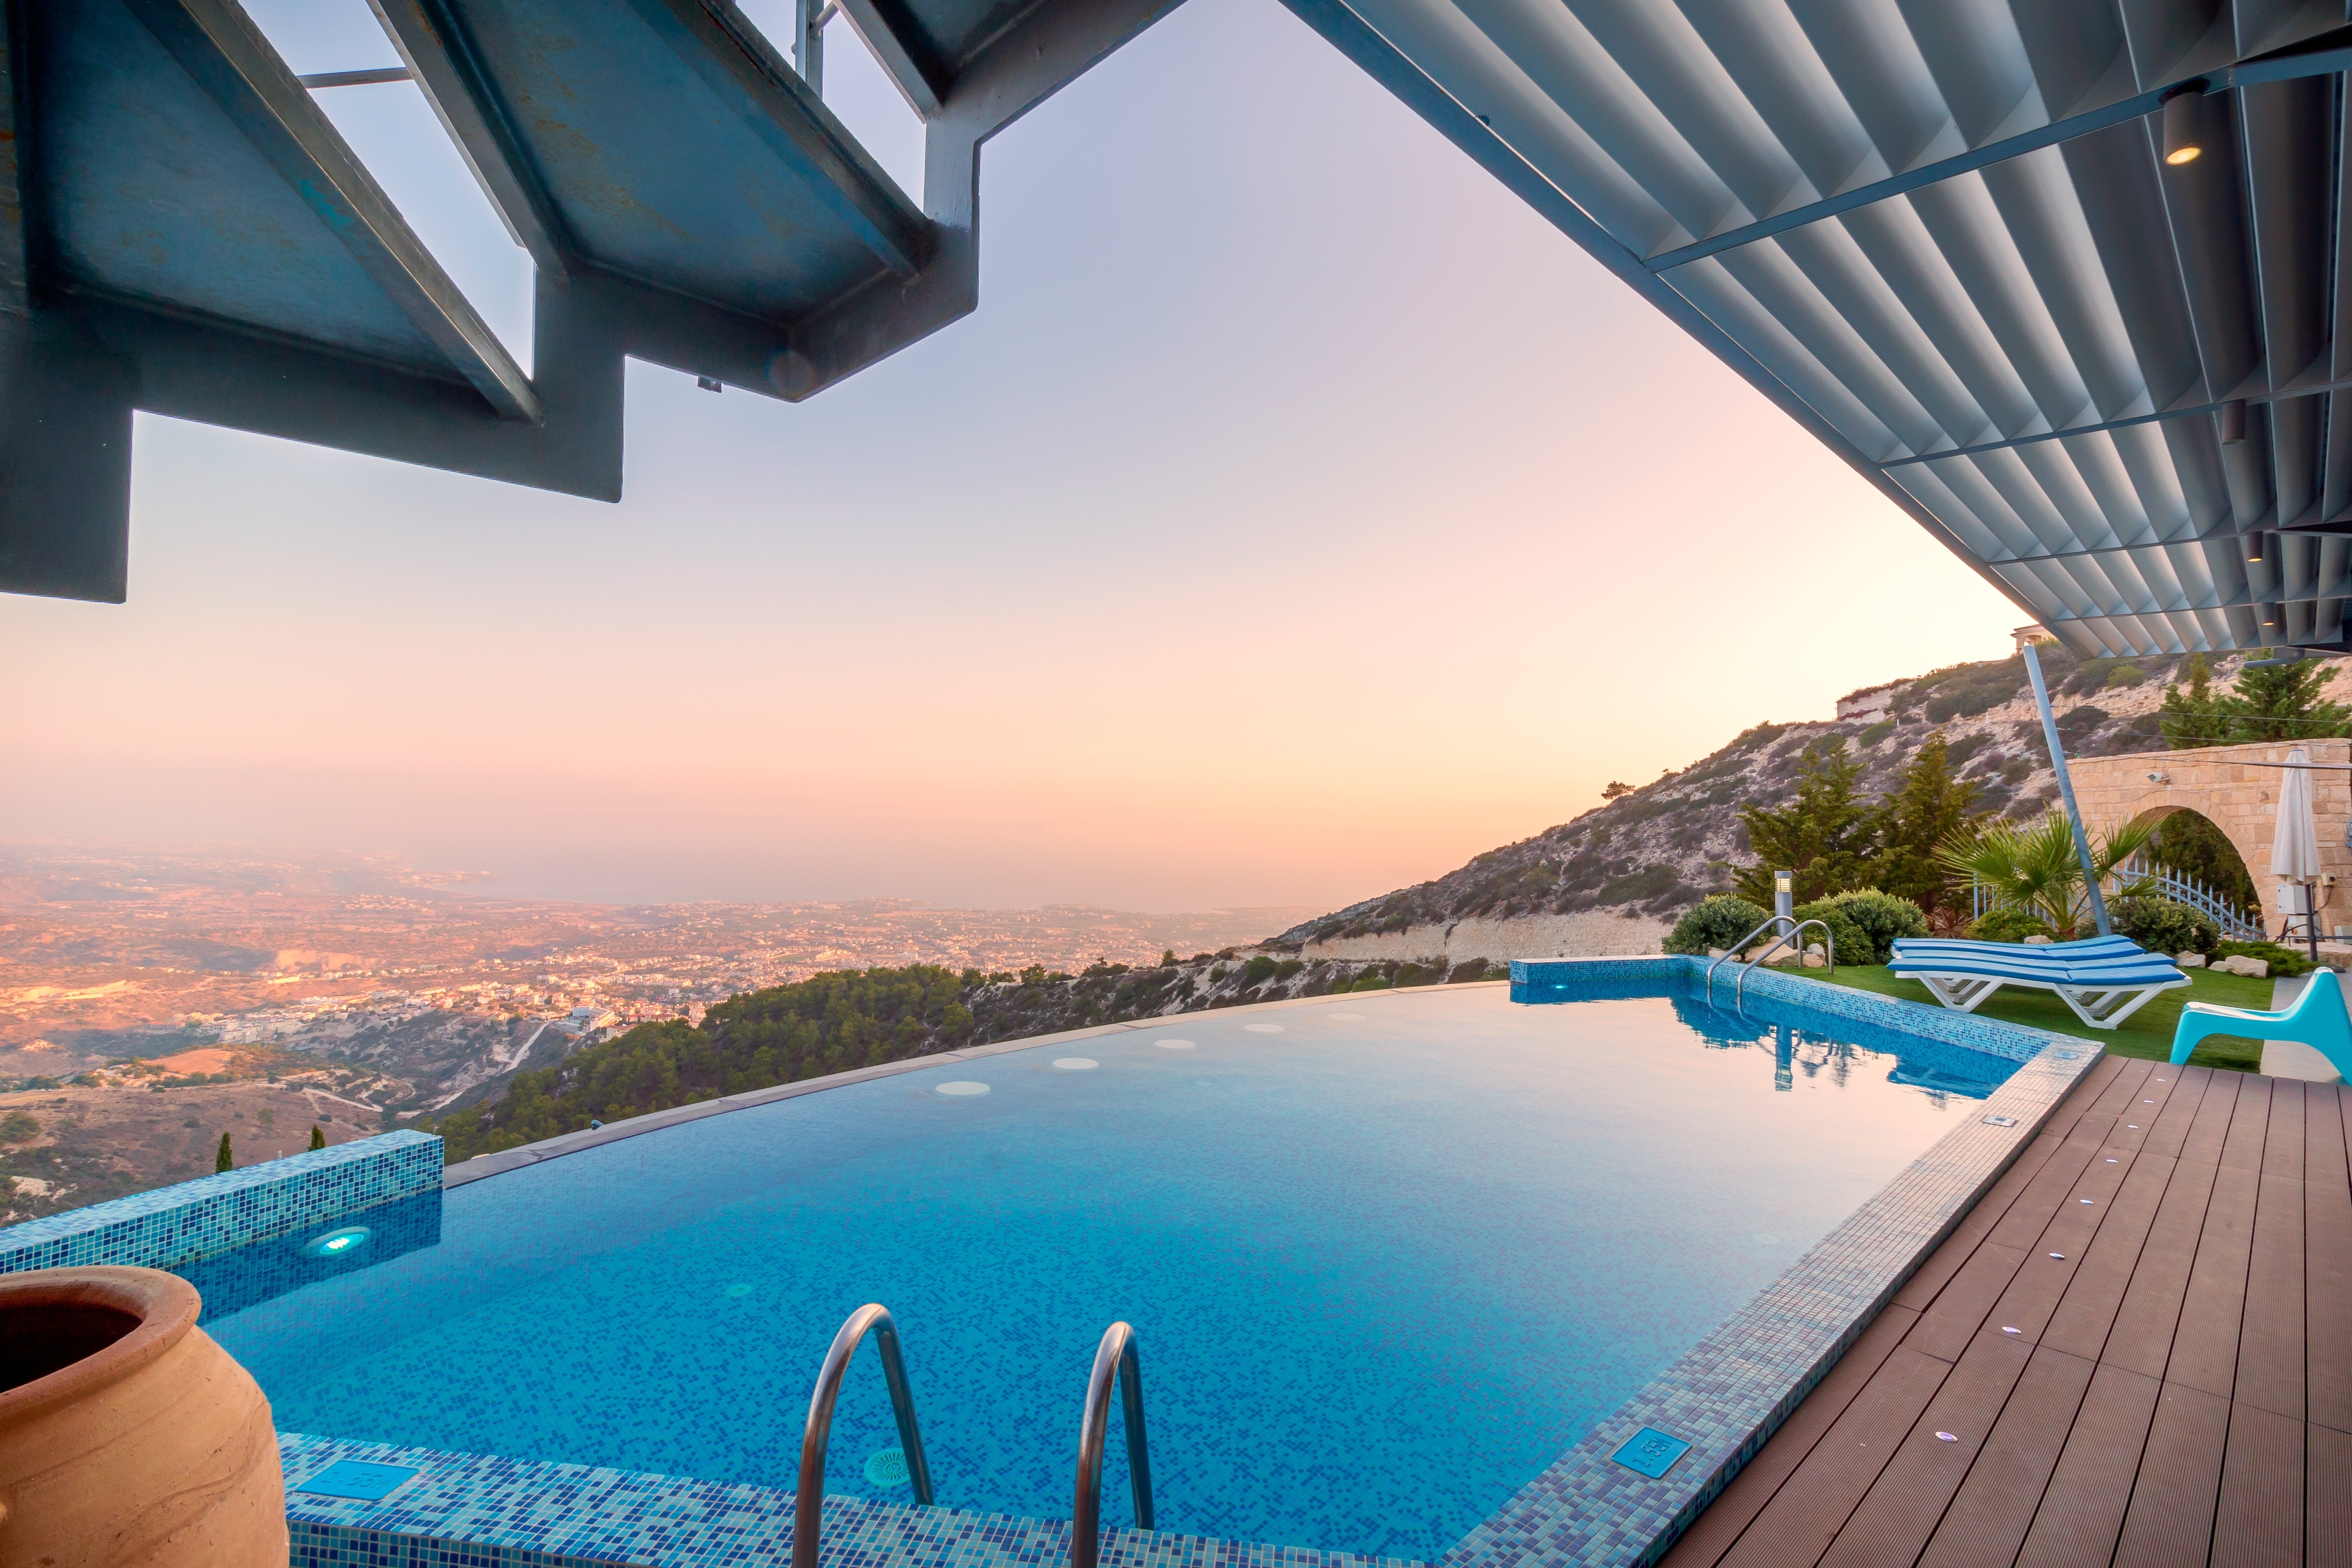 Luxury hotels in Greece